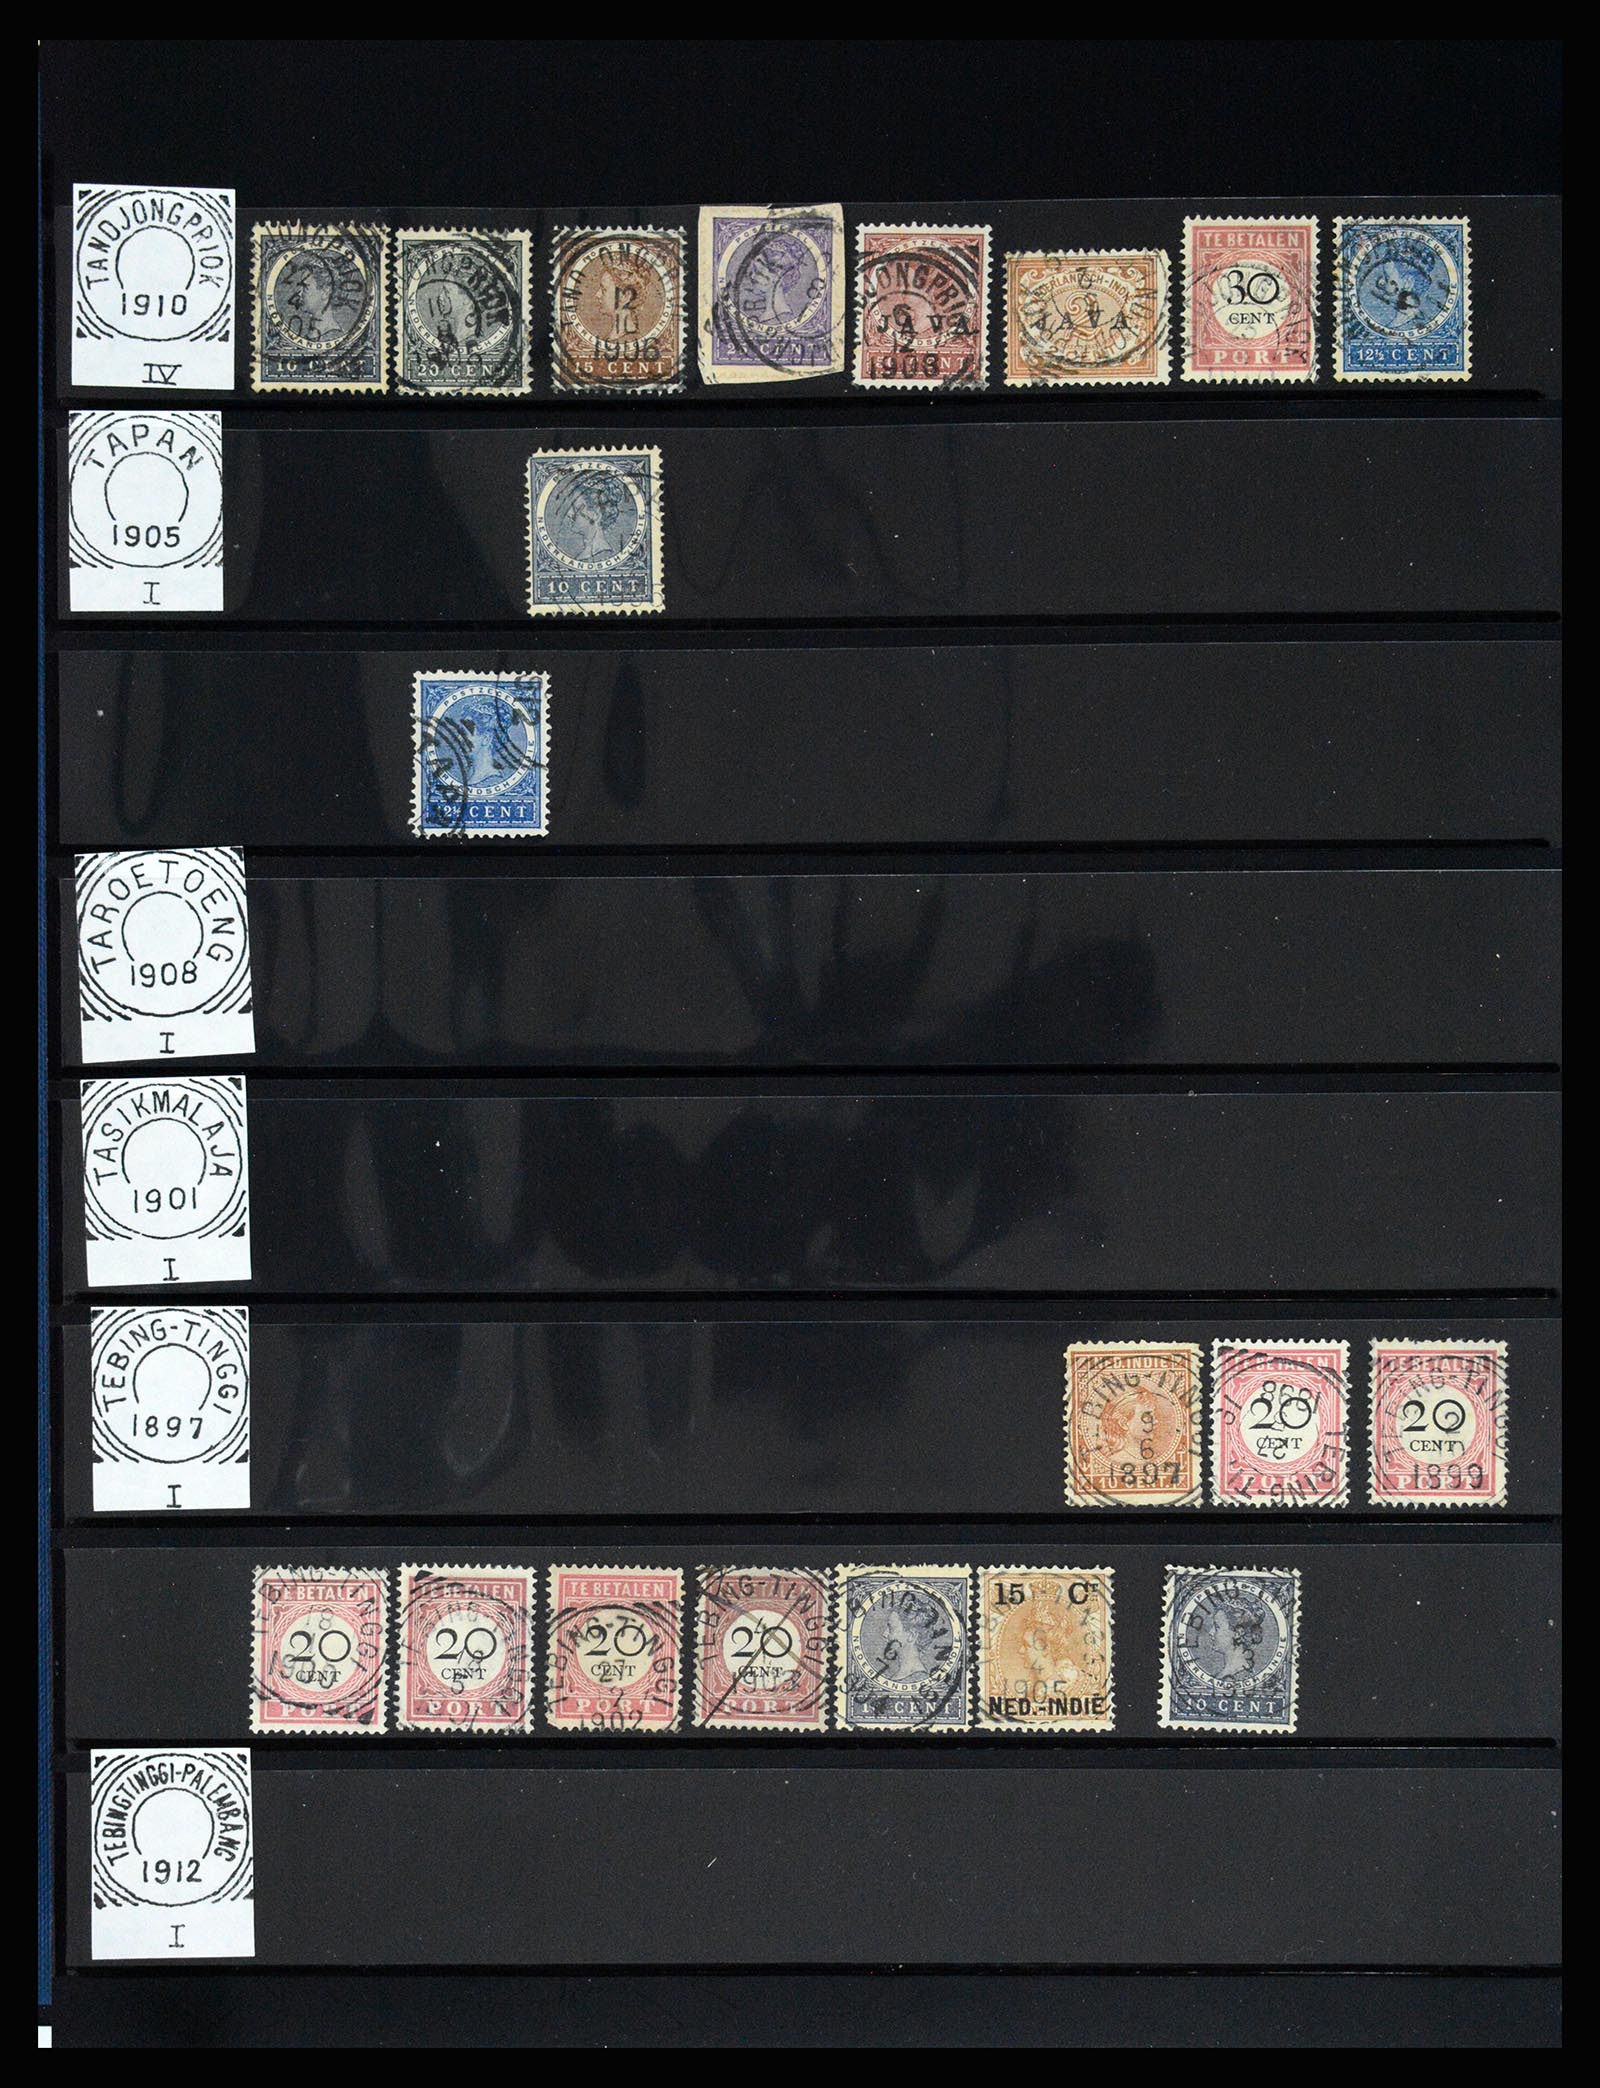 36512 155 - Stamp collection 36512 Nederlands Indië stempels 1872-1930.